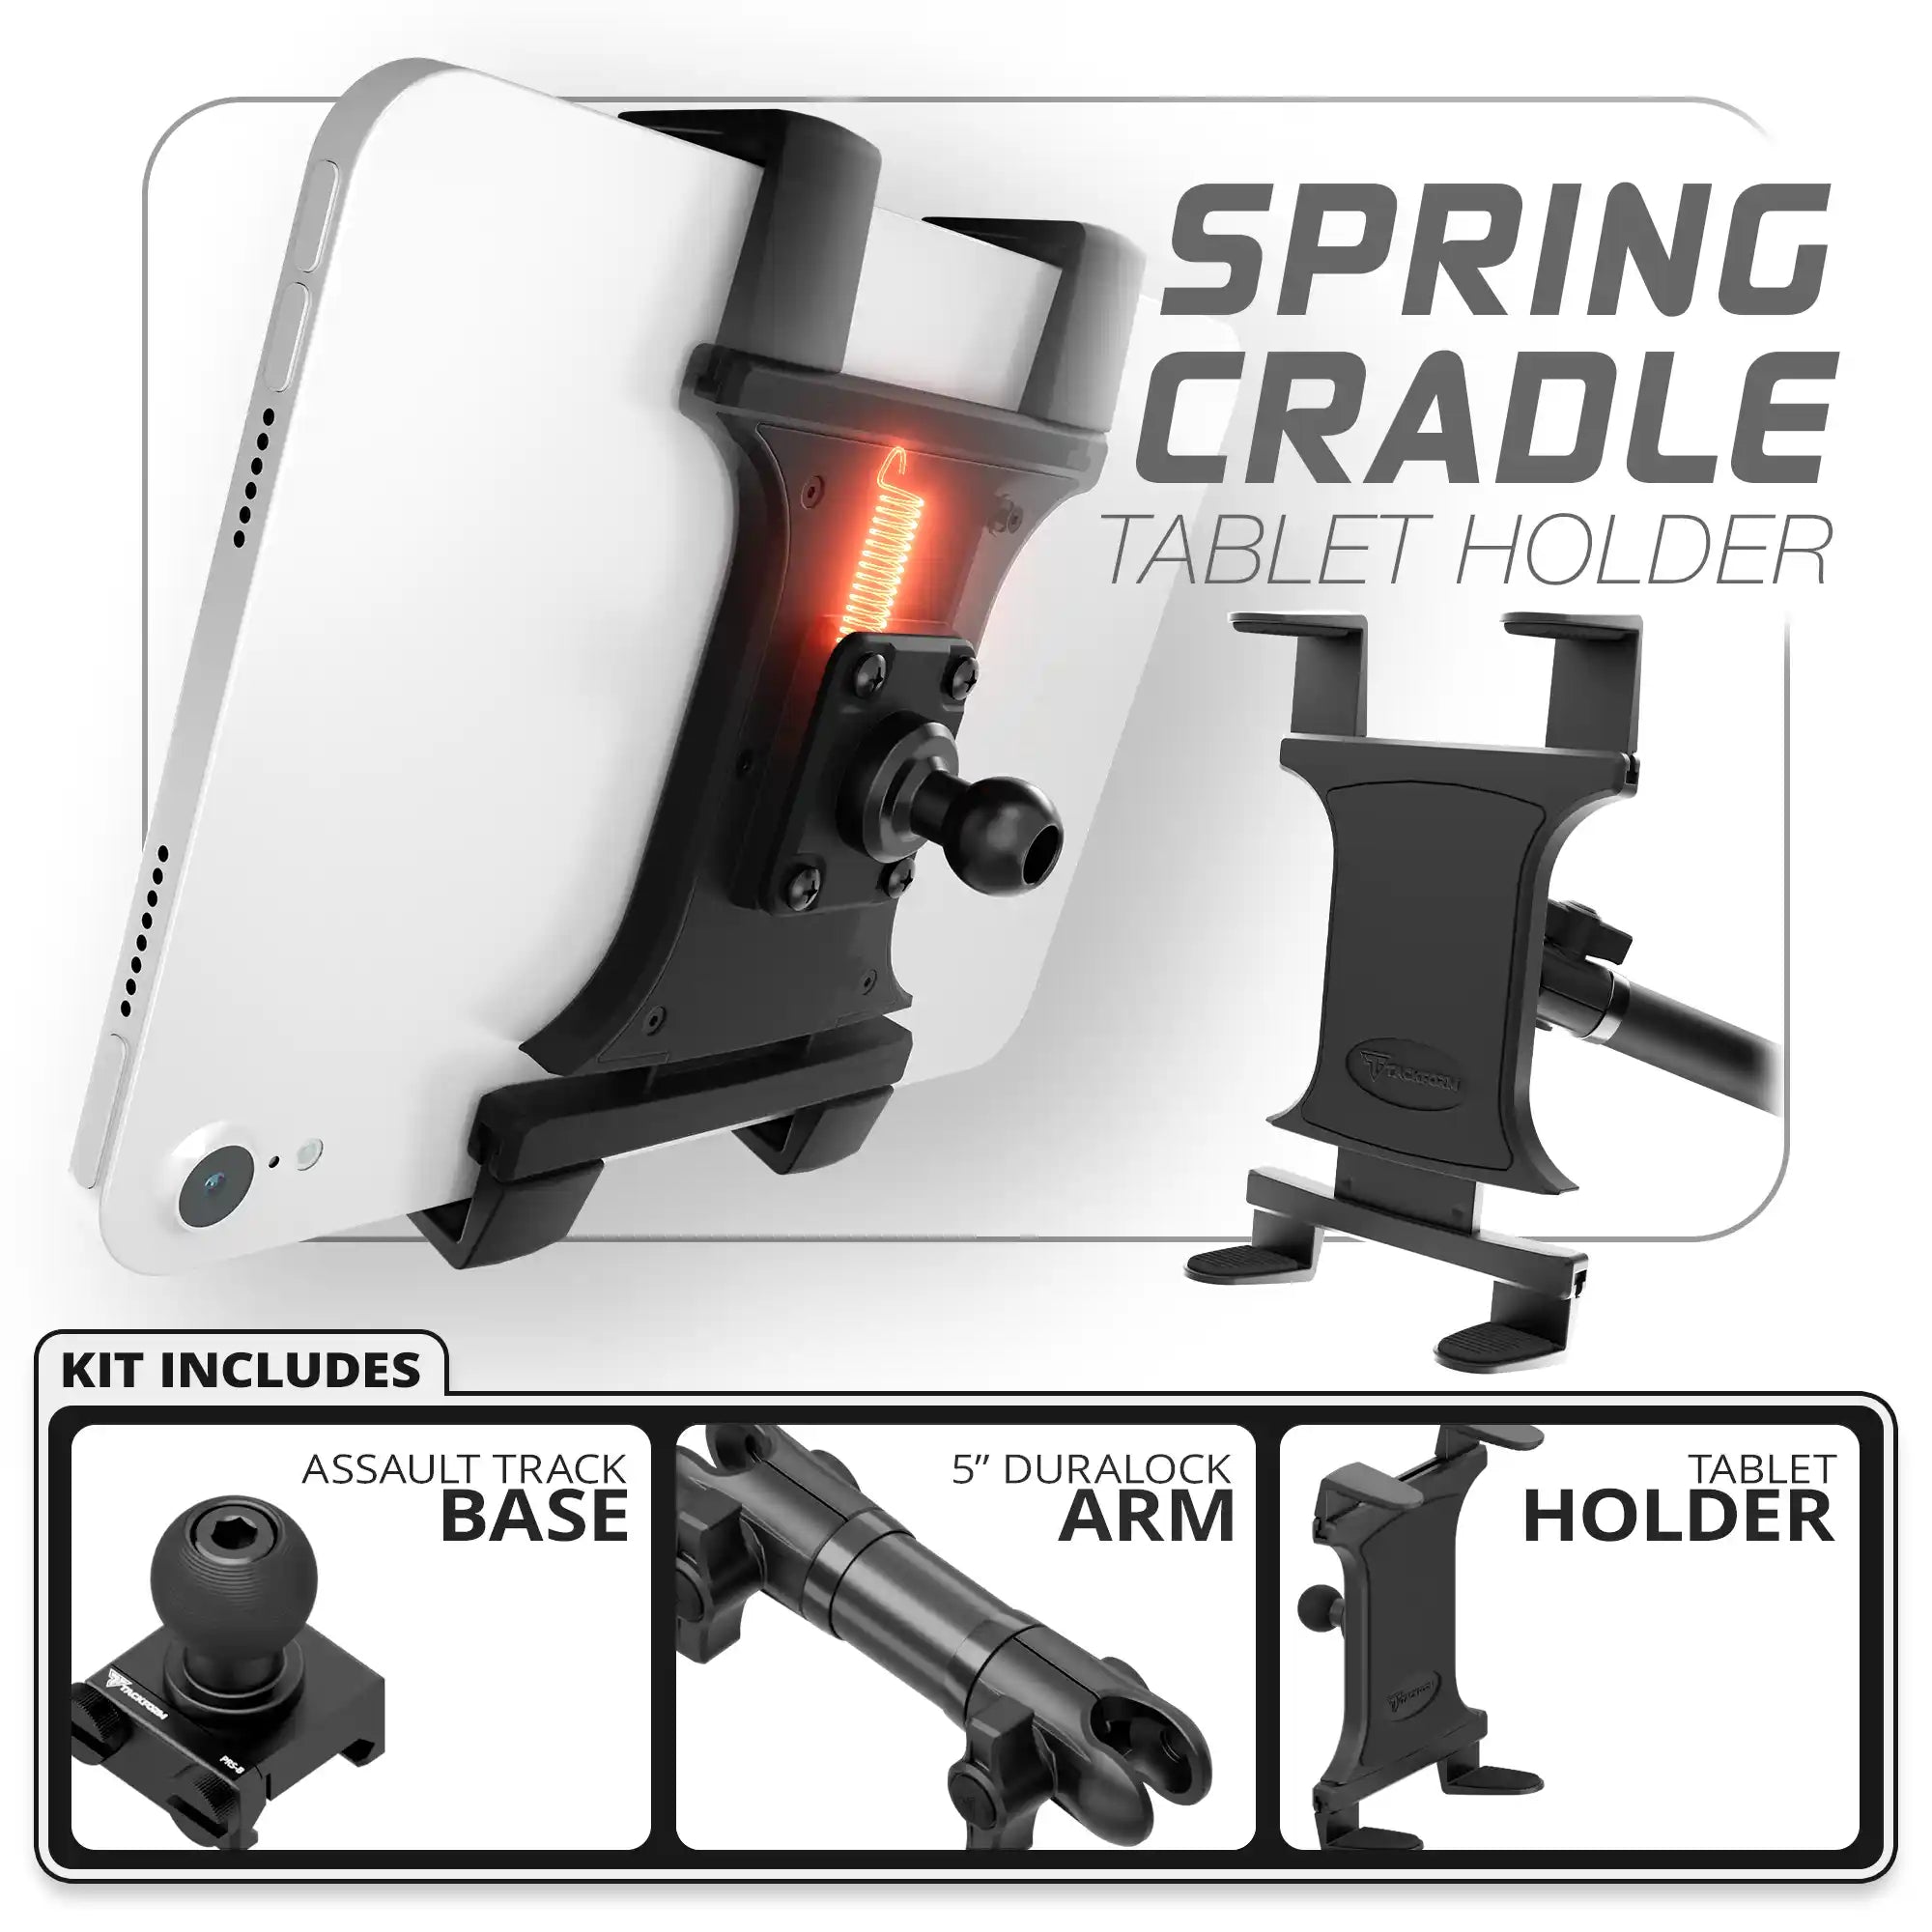 Tablet Spring Cradle | Assault Track Base | 5" DuraLock Arm